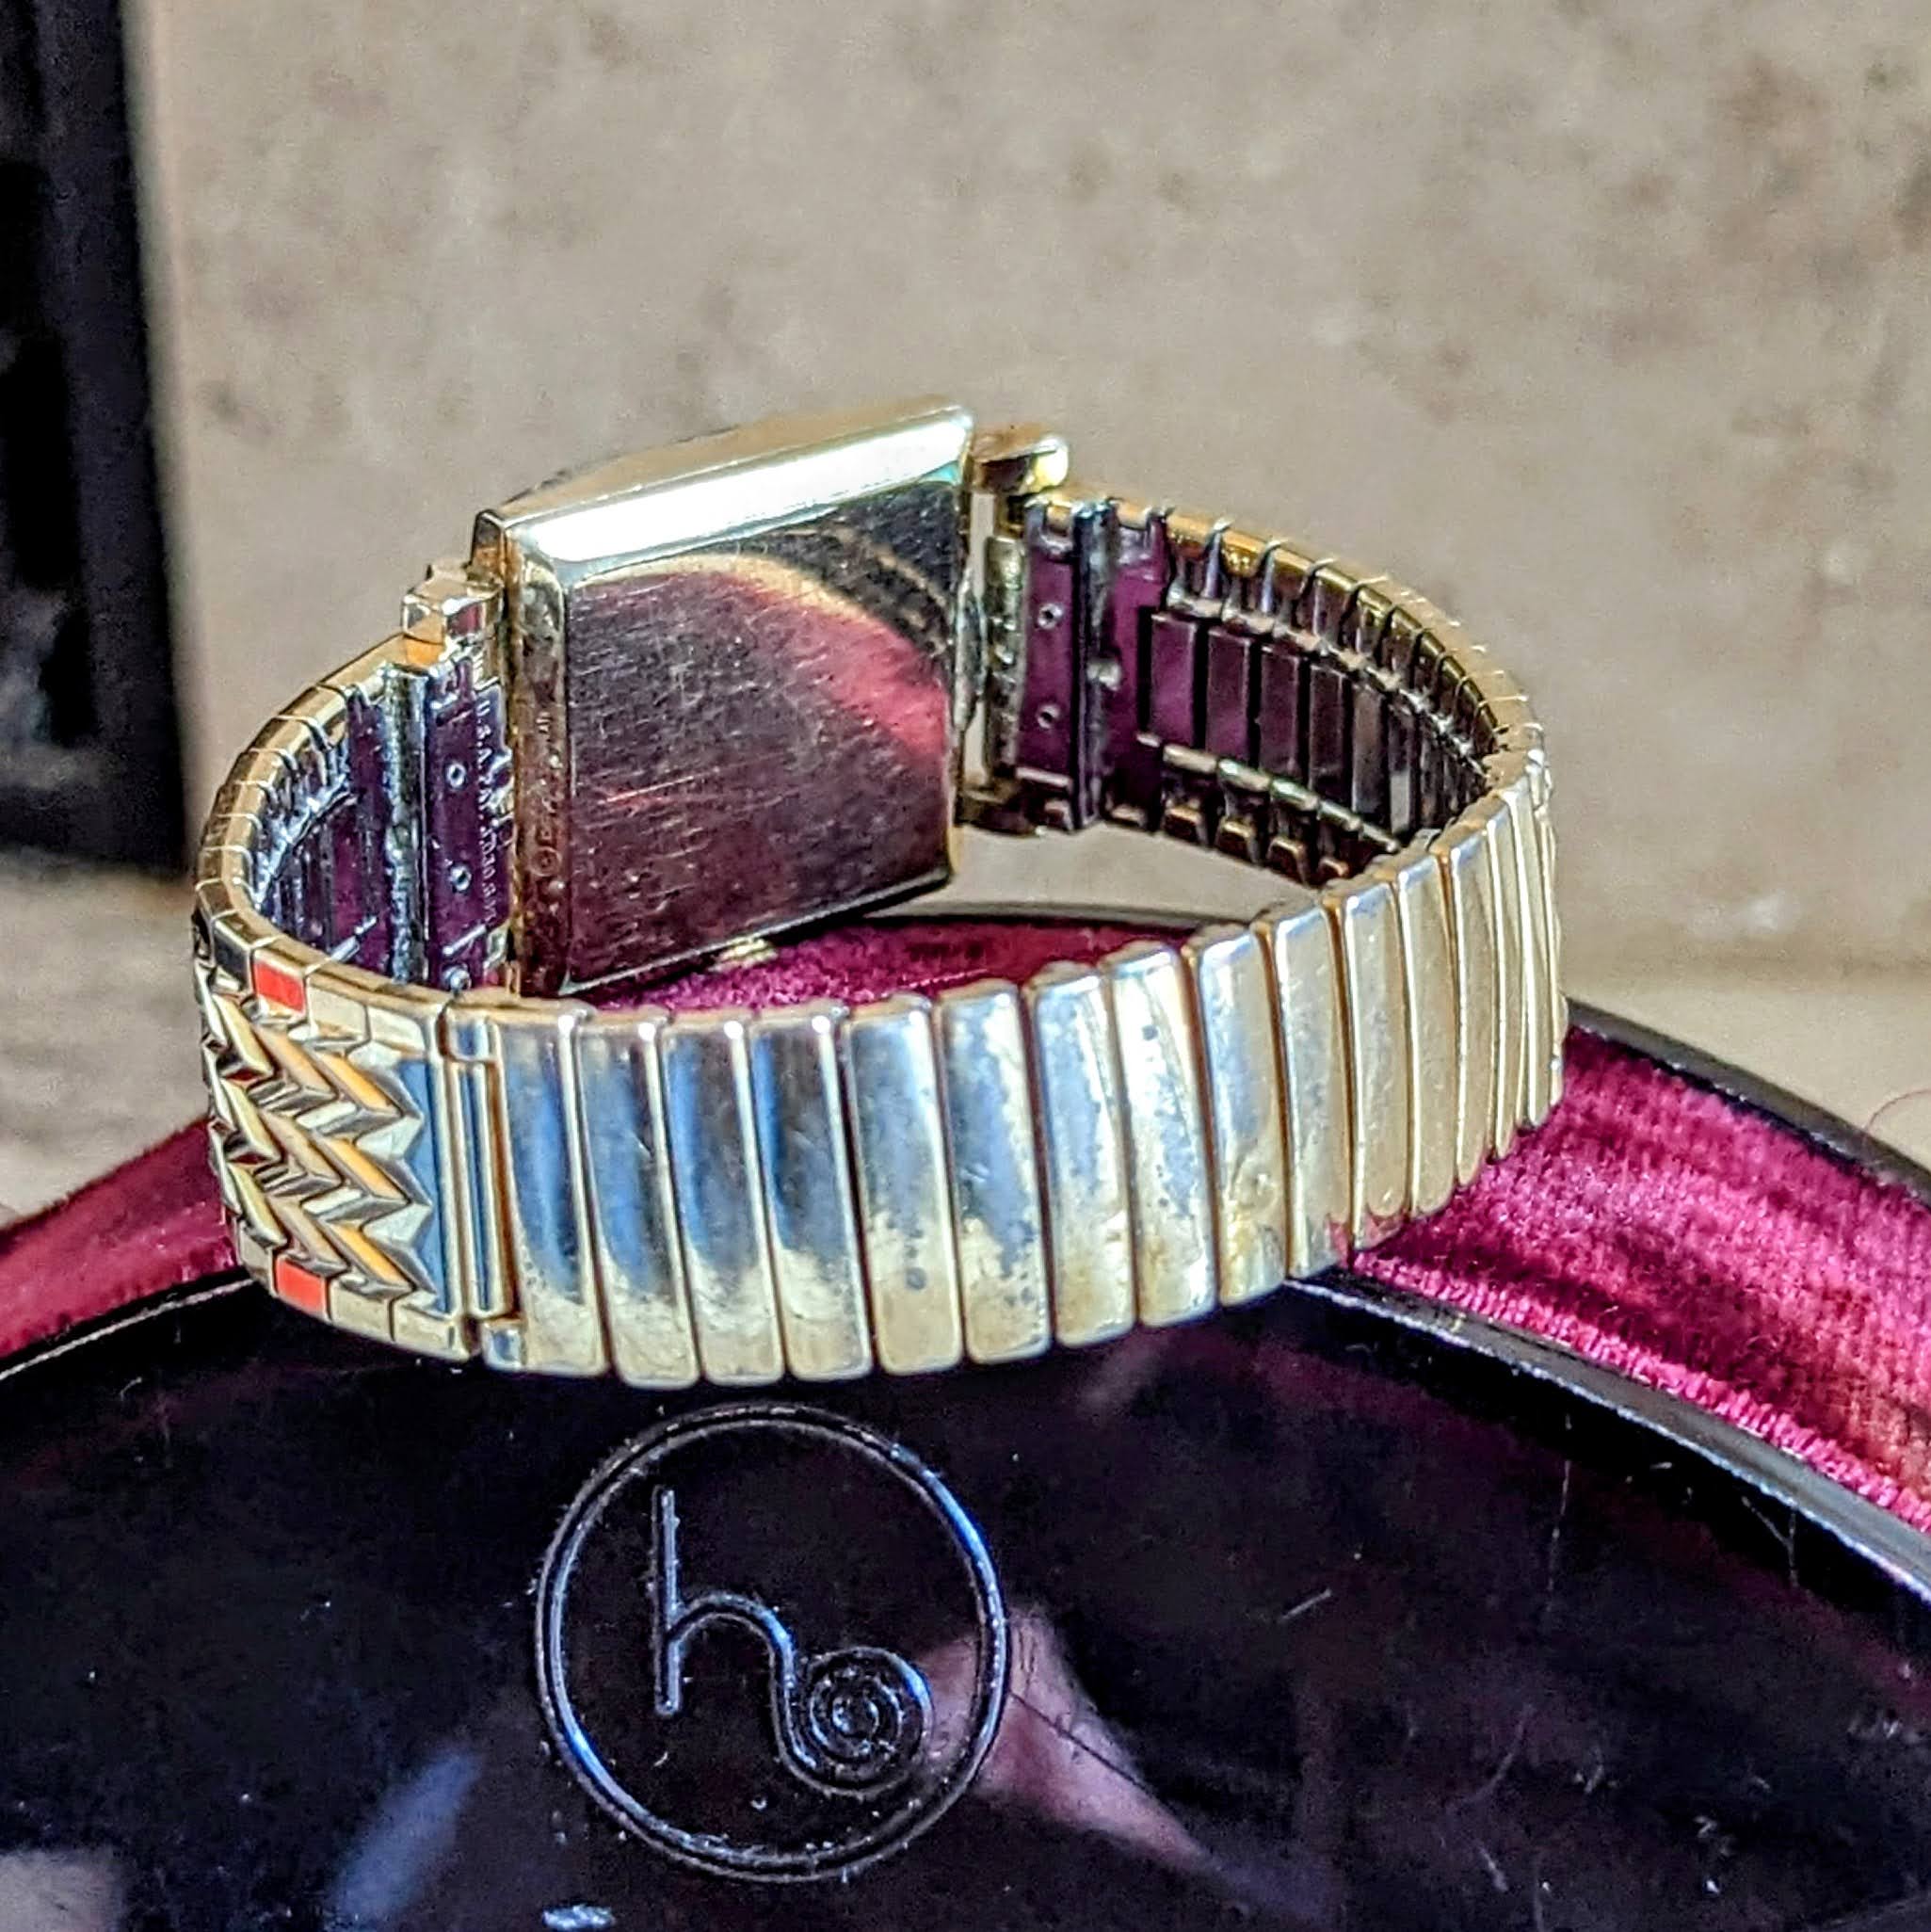 HELBROS Wristwatch 17 Jewels Swiss Caliber 101 Fancy Case, Crystal, Lugs & Bracelet Watch